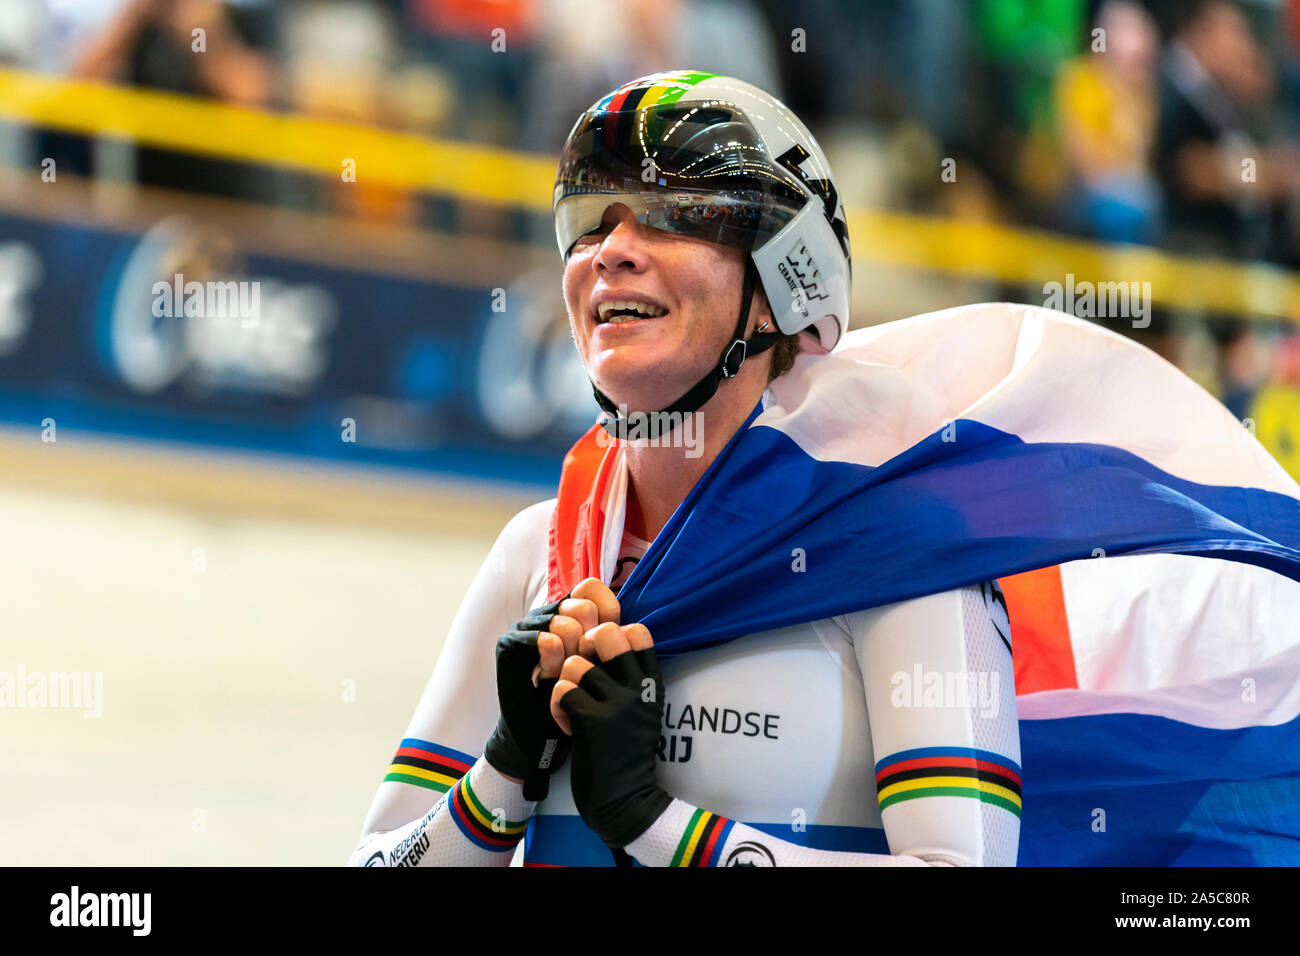 Kirsten Wild NED gewinnt der Frauen Omnium während der uec Titel Radfahren Europäische Meisterschaft am Oktober, 18 2019 in Apeldoorn, Niederlande. (Foto von SCS/Sander Chamidn Stockfoto